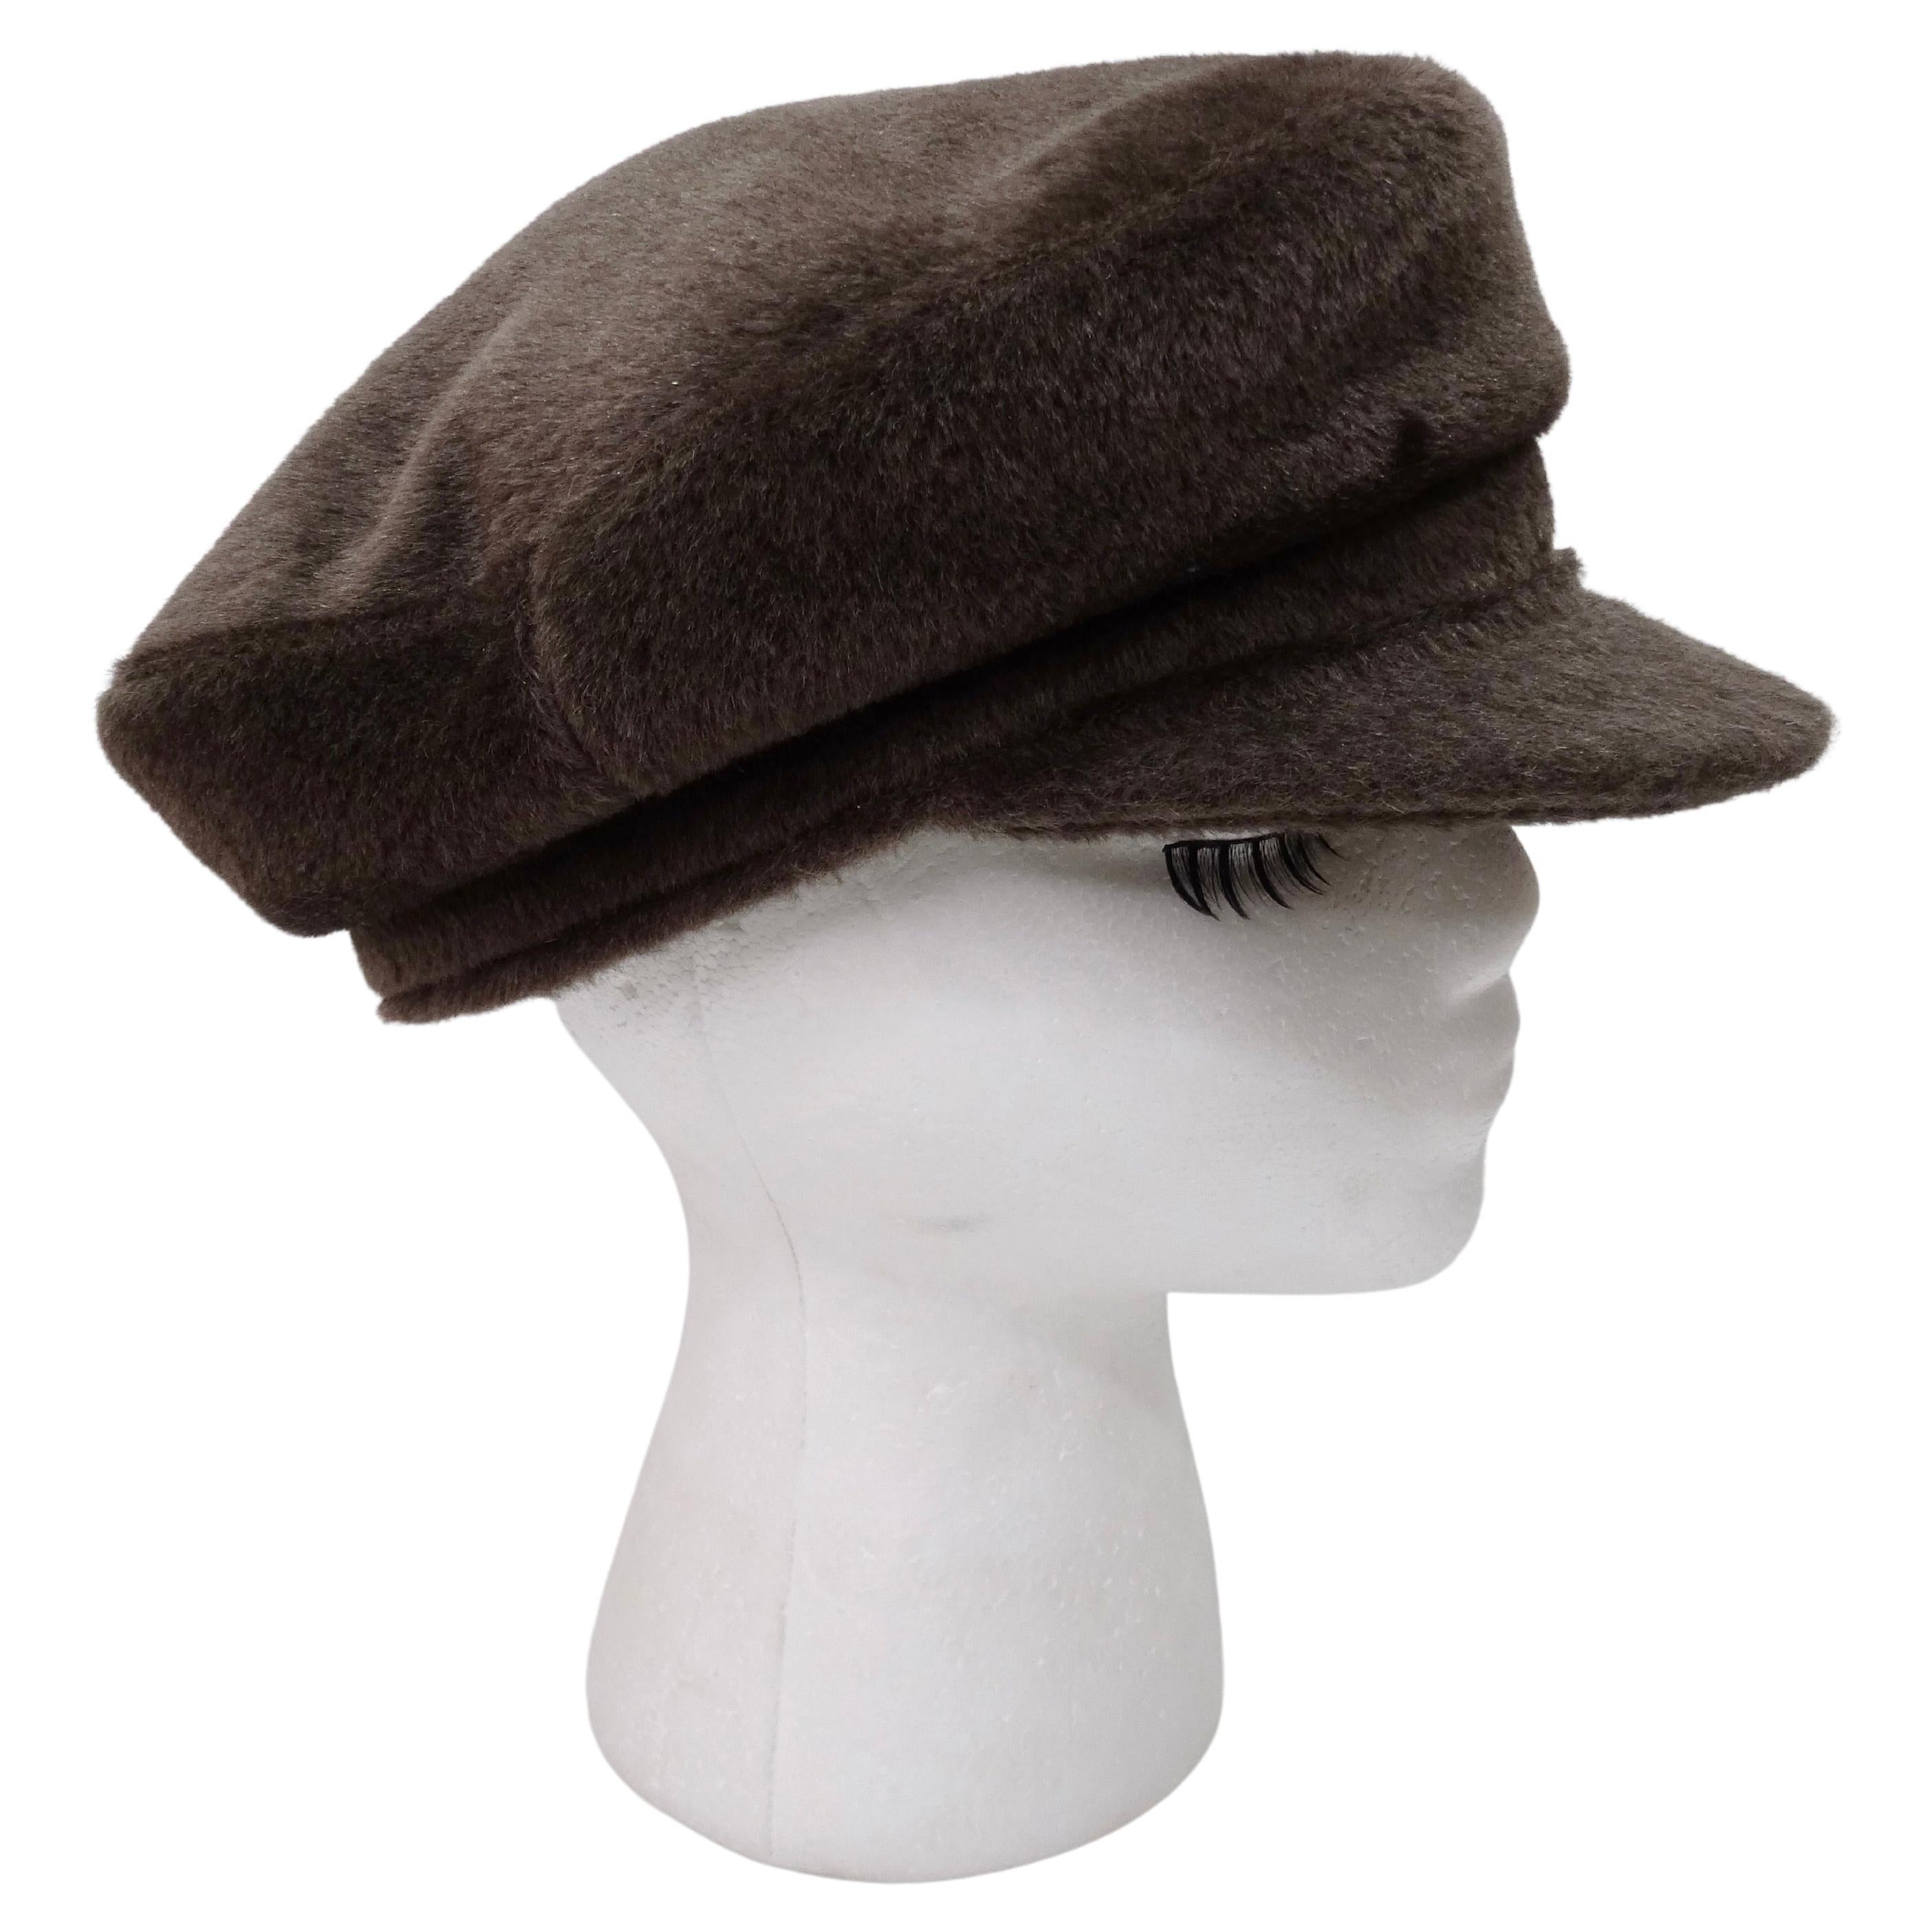 Hermes Wool Fisherman Hat For Sale